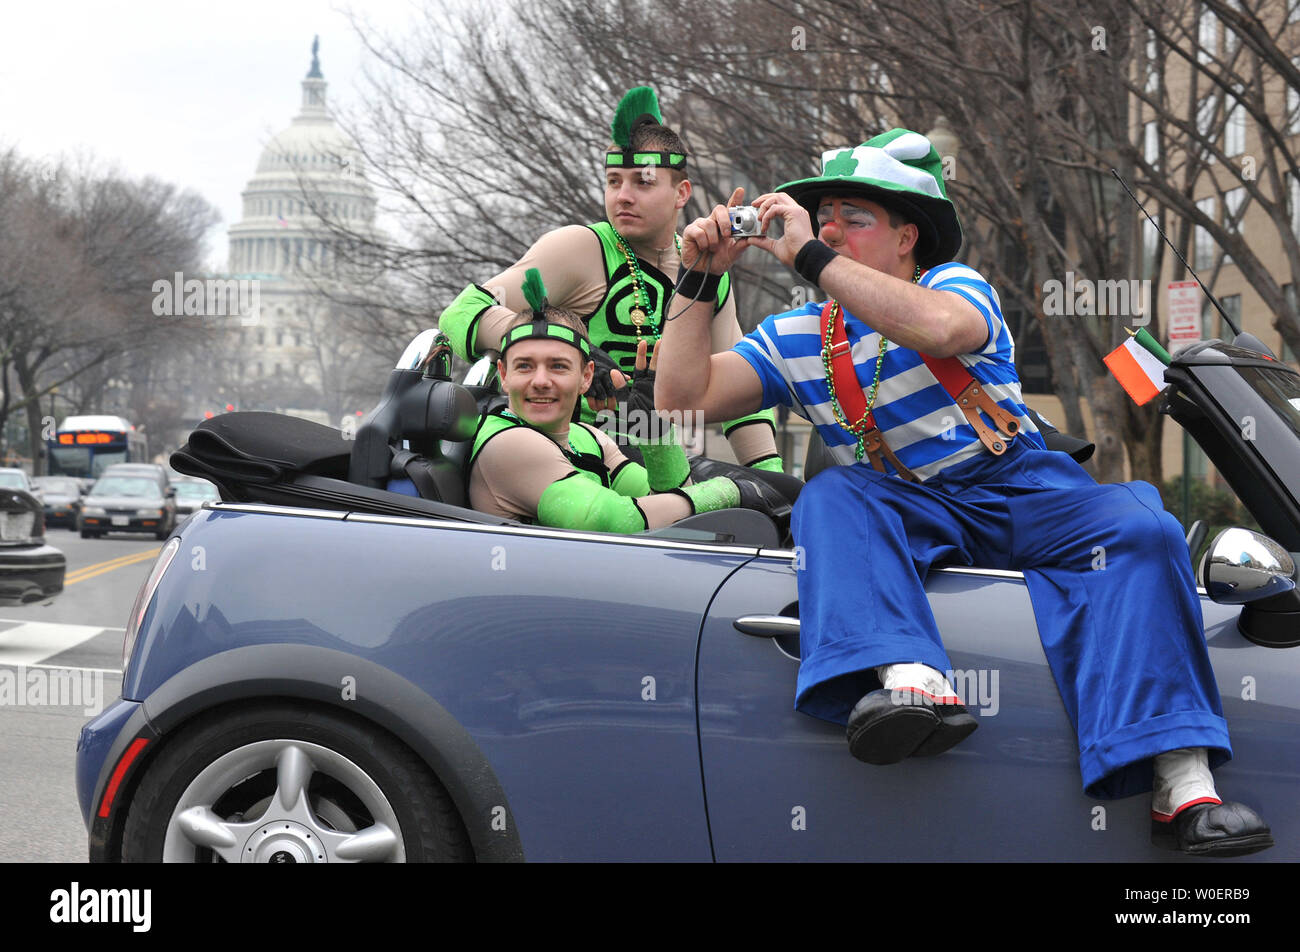 Der Clown macht ein Foto von der Rückseite eines Autos während des Ringling Brothers und Barnum und Bailey Zirkus Dickhäuter Parade in Washington am 17. März 2009. Der Zirkus wird in Washington von März 19.-22. (UPI Foto/Kevin Dietsch) Stockfoto